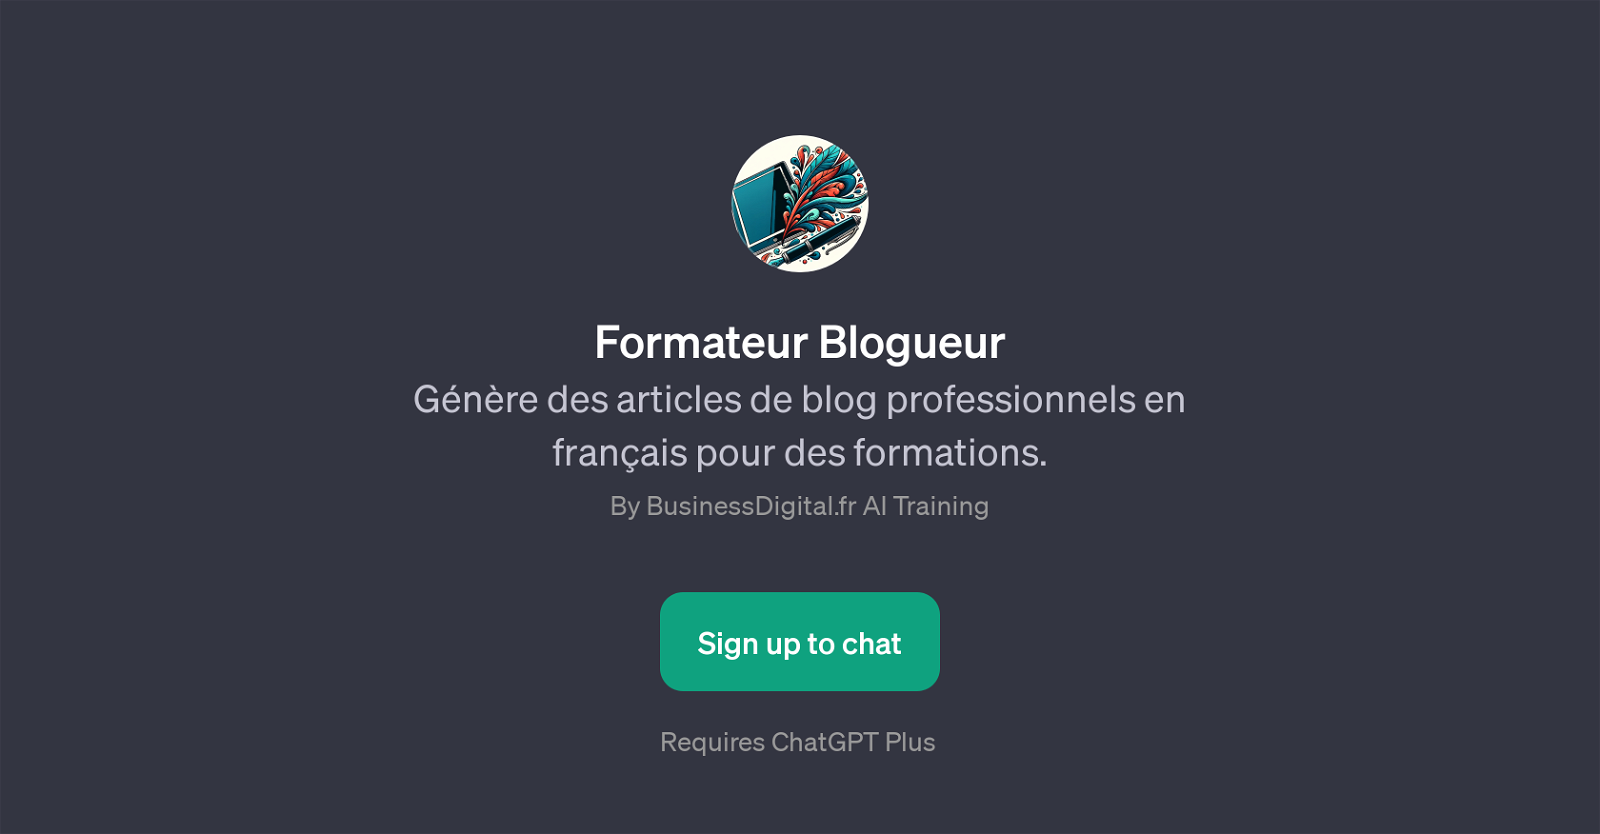 Formateur Blogueur website